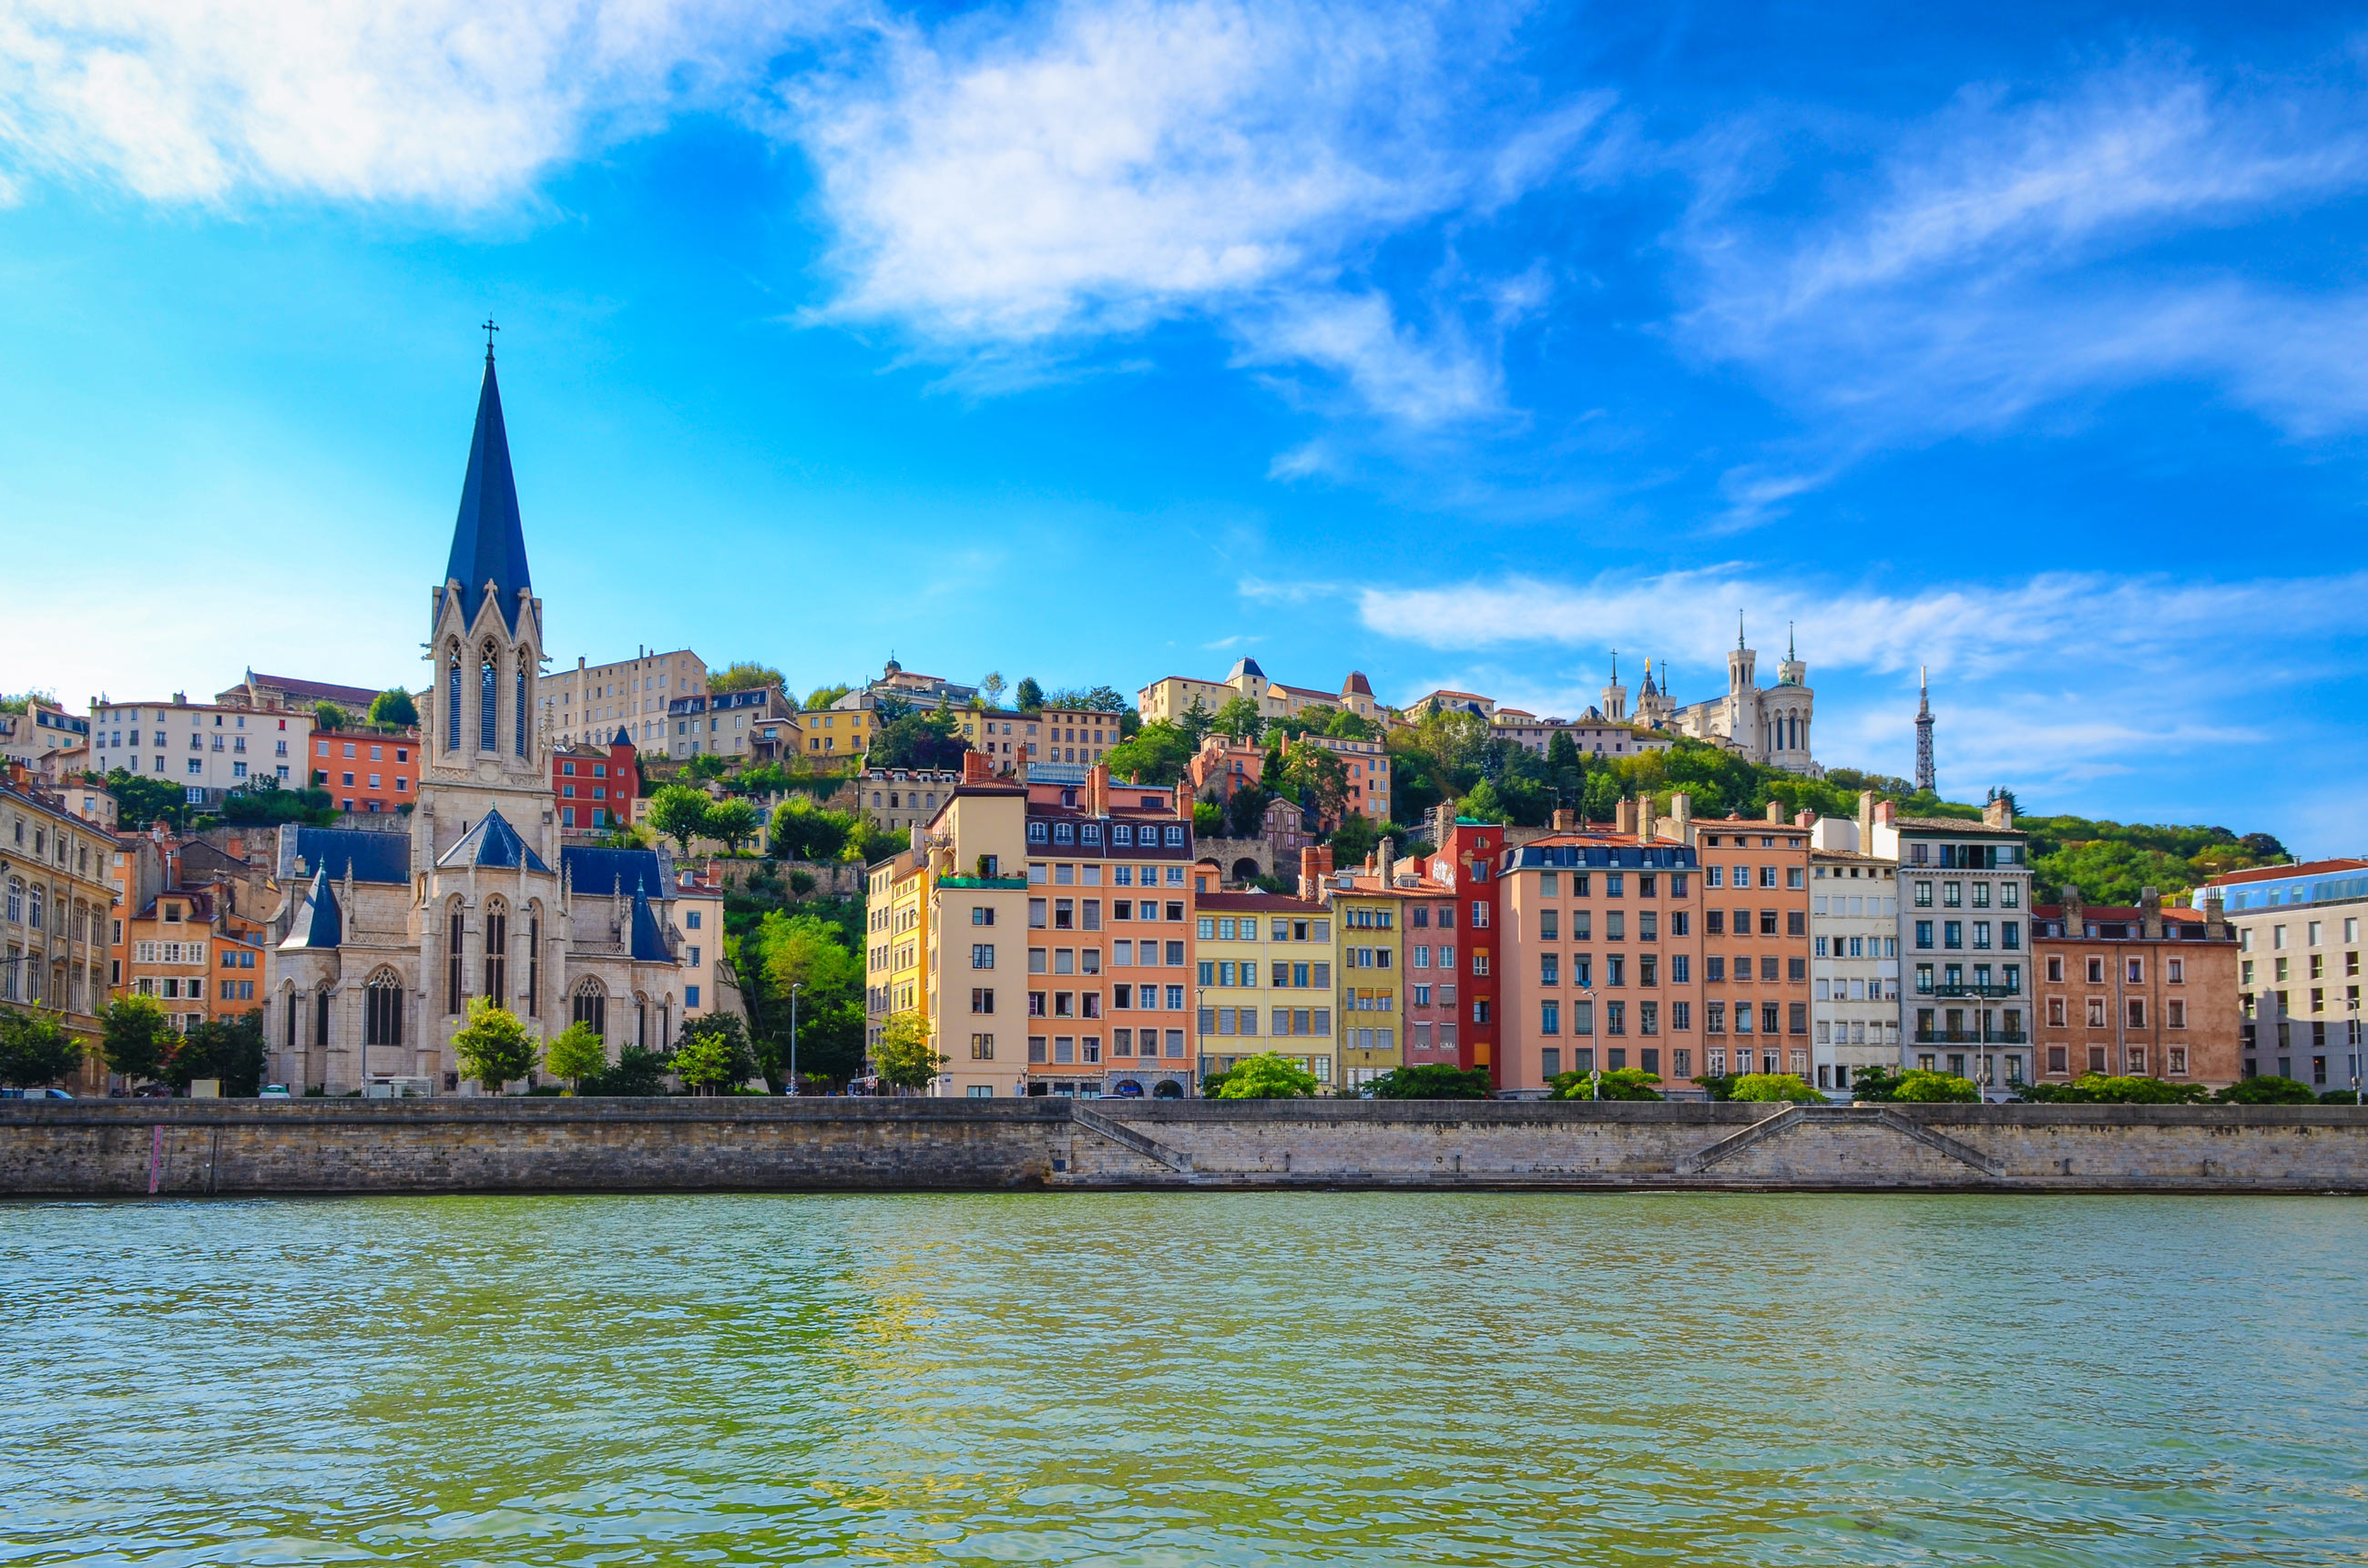 Les quais de Saône et le Vieux Lyon © Martin M303/Shutterstock.com